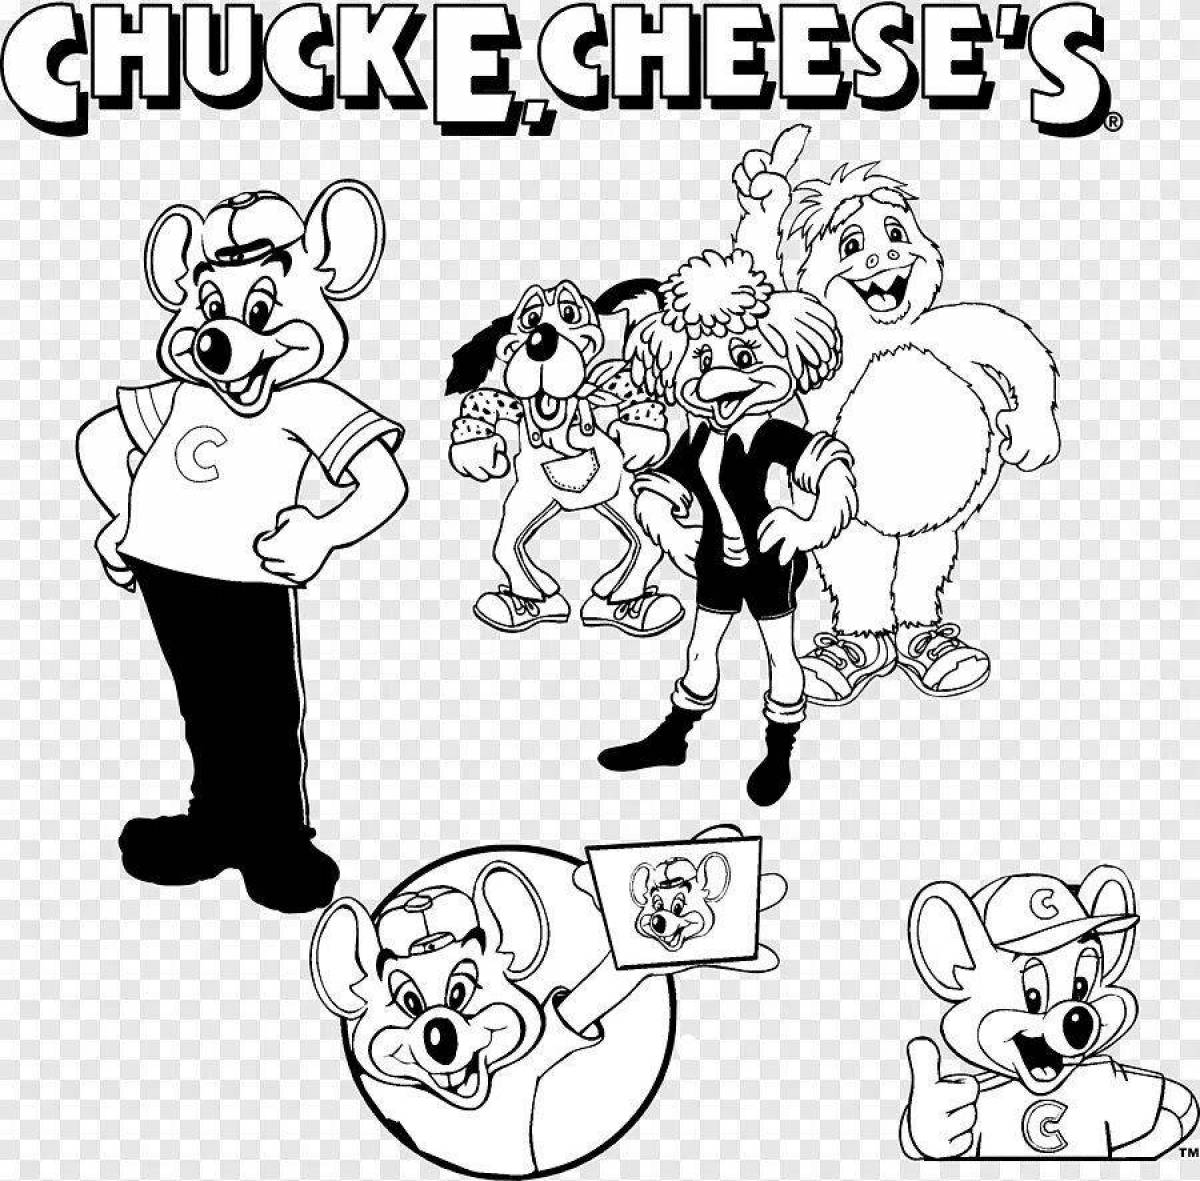 Chucky cheese #2